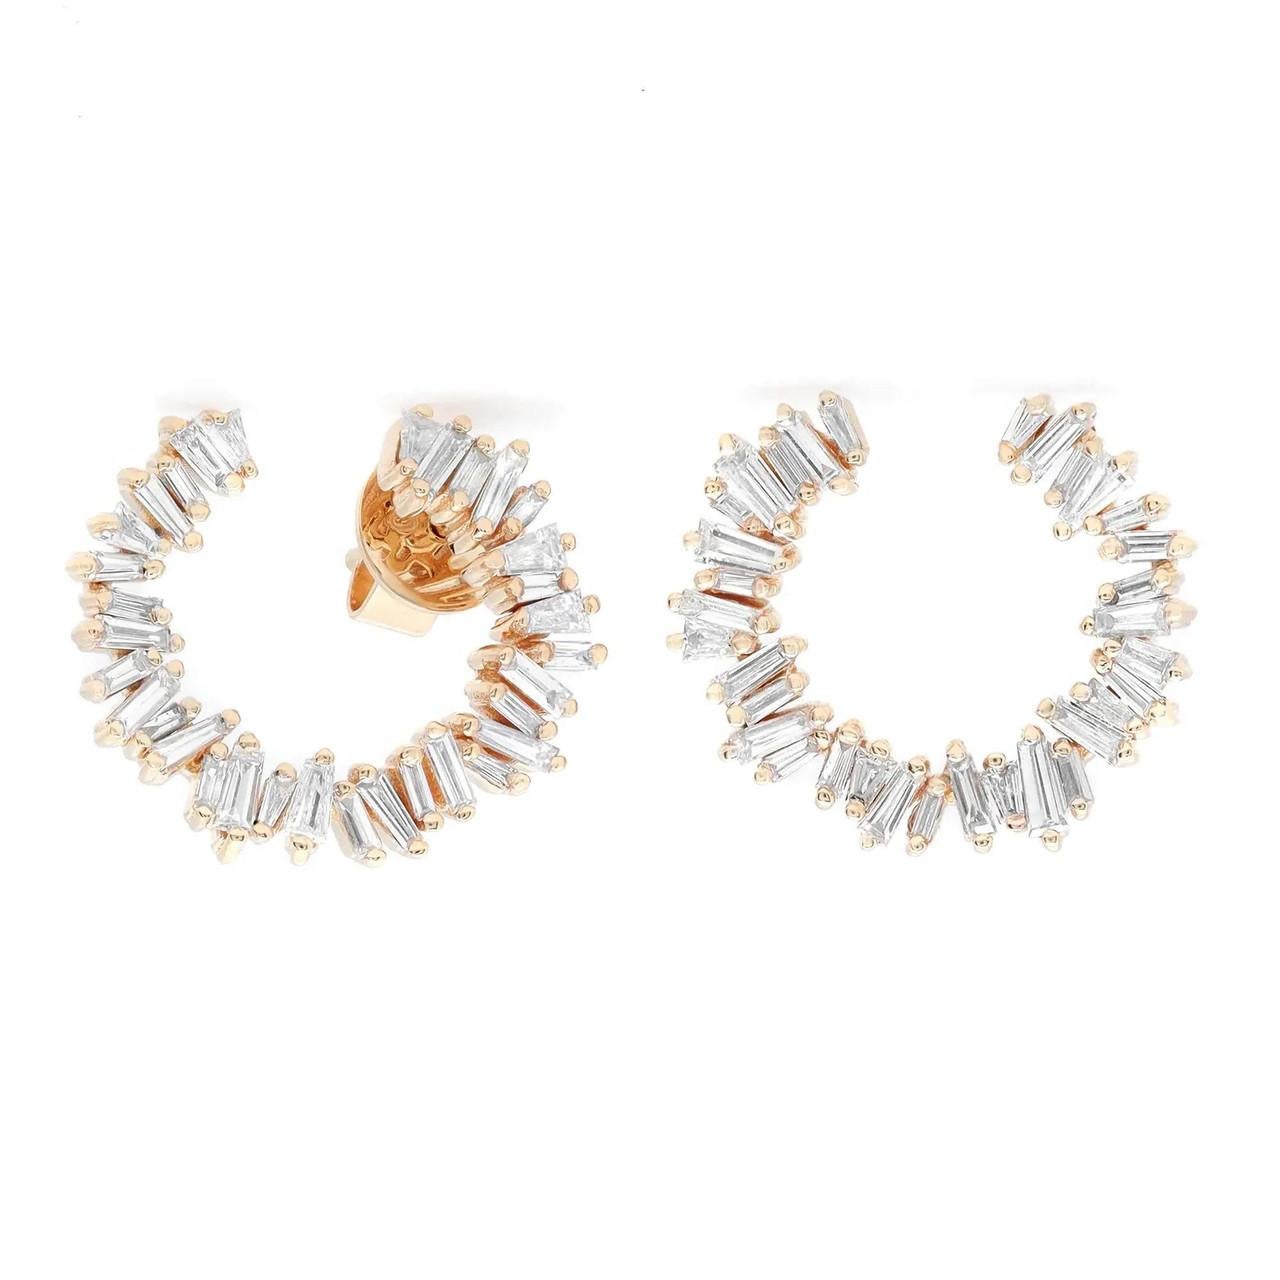 Modern 1.00 Carat Baguette Cut Diamond Stud Earrings in 18K Yellow Gold